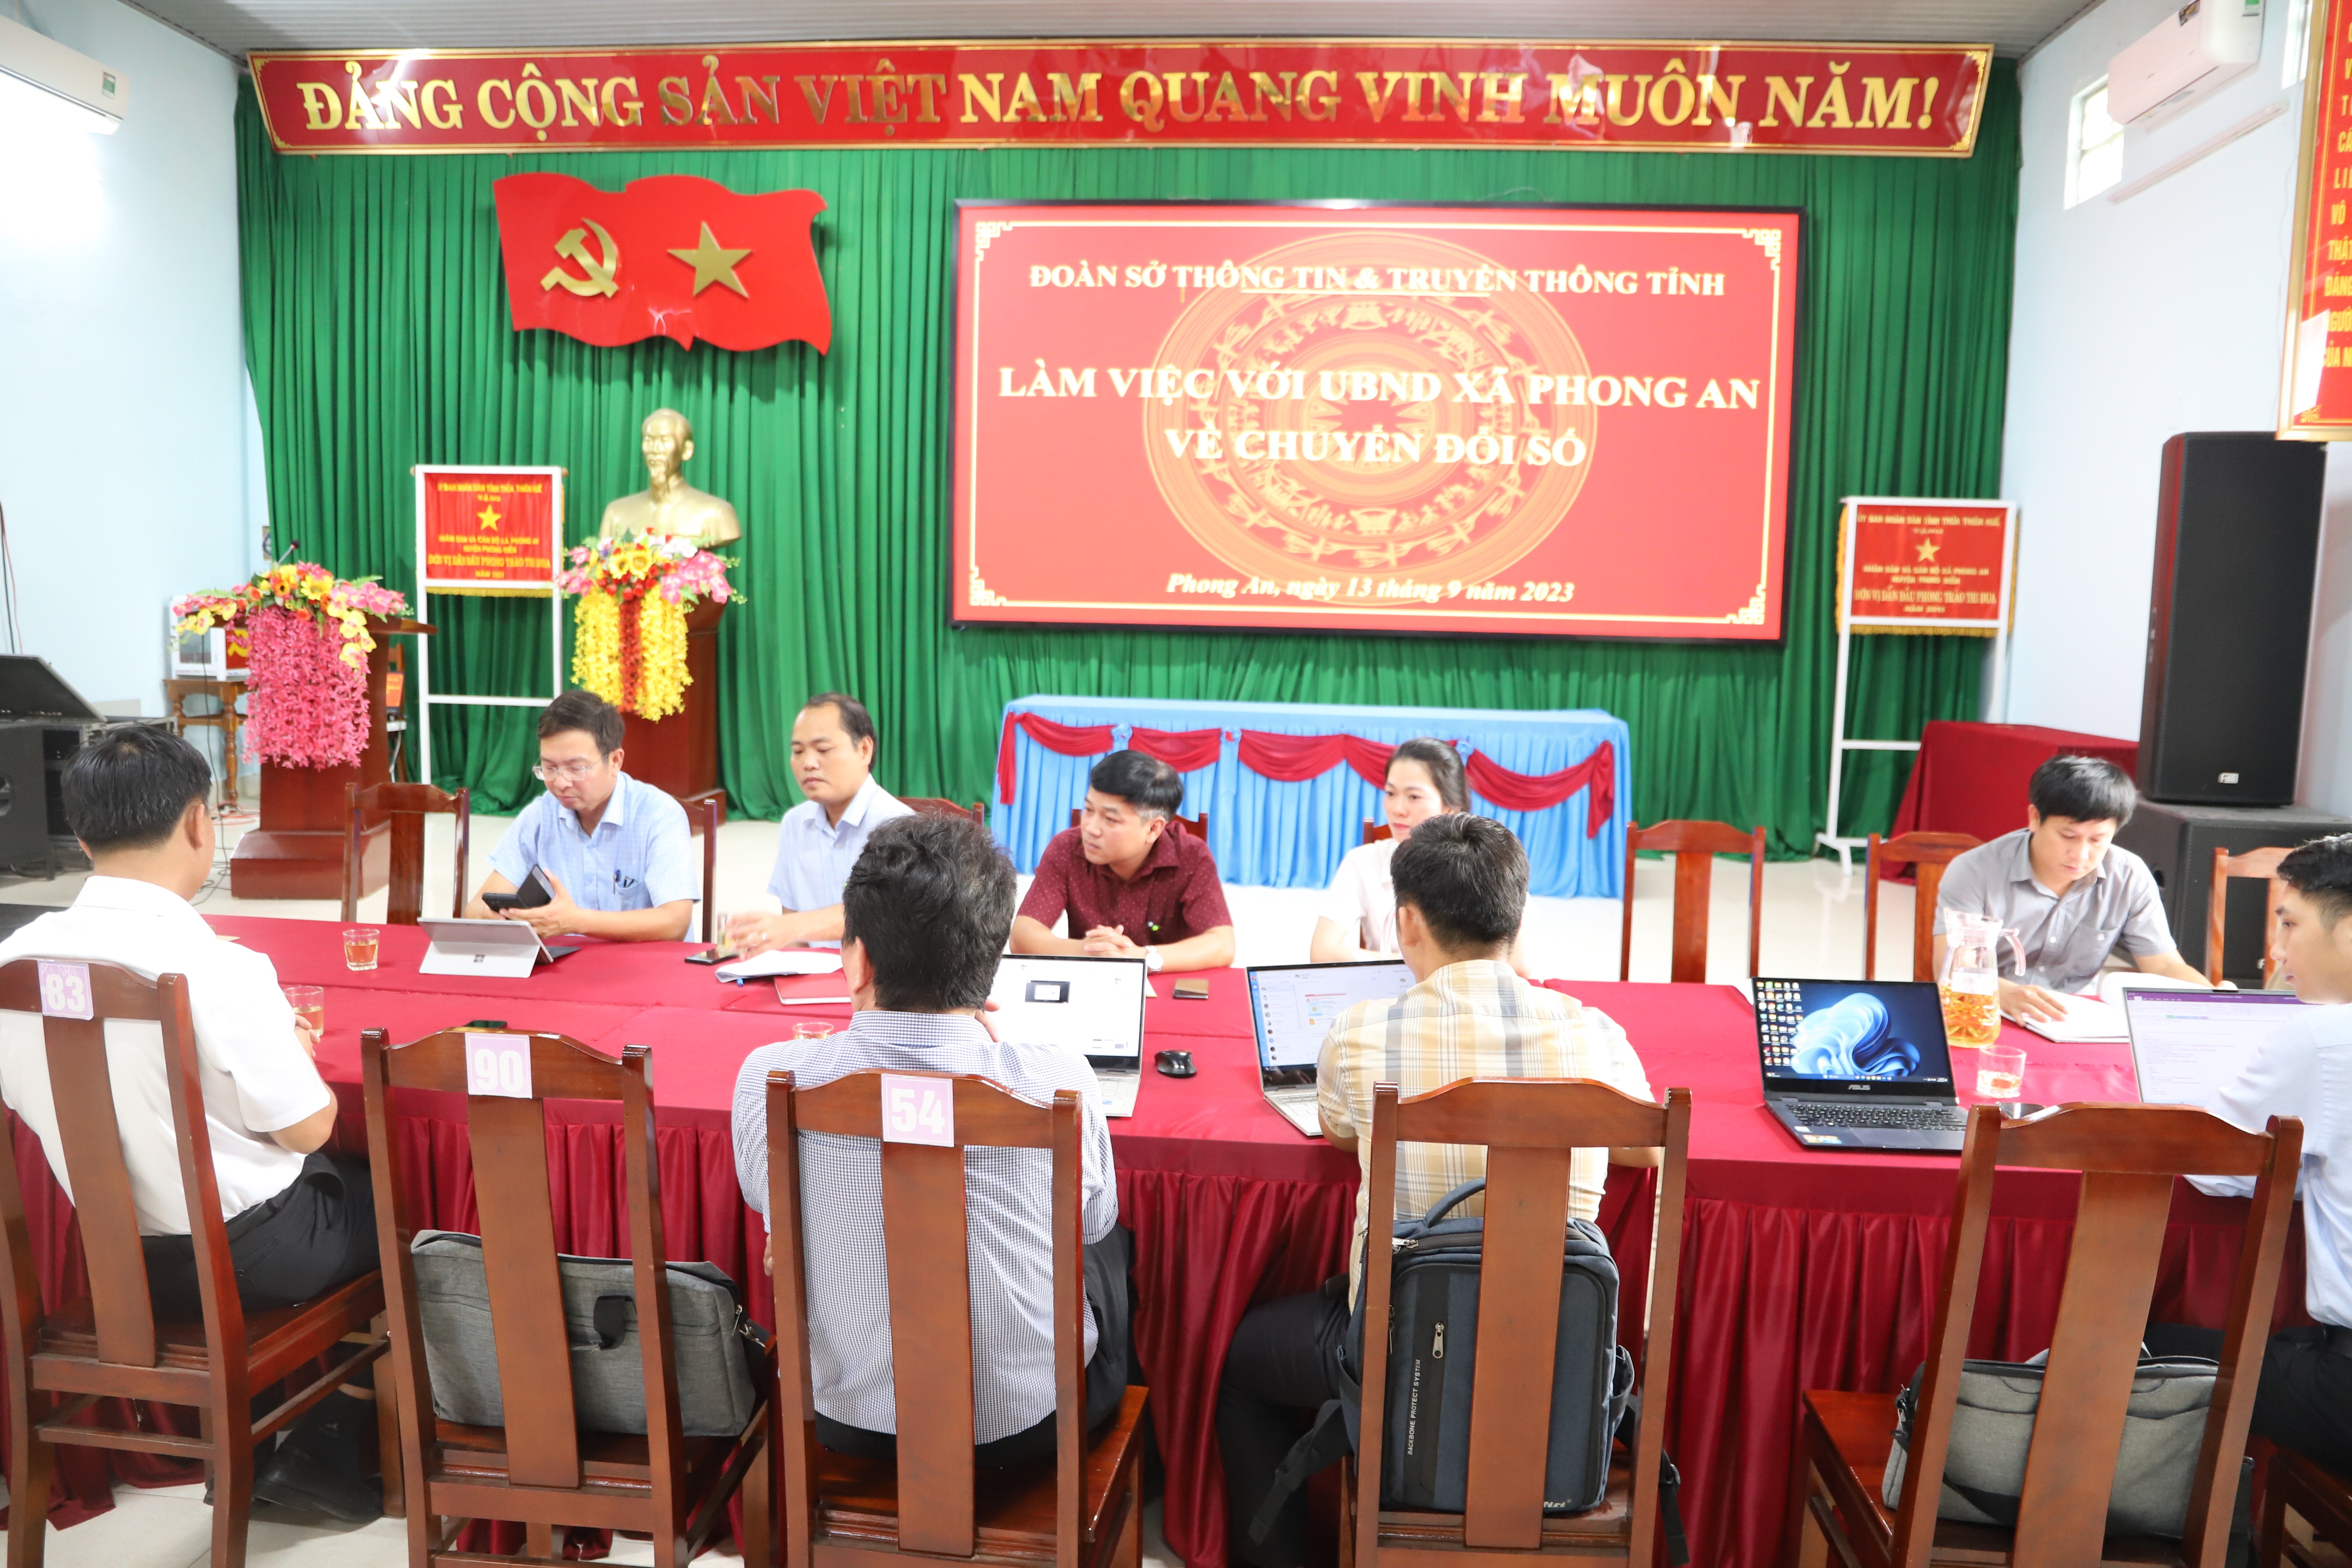 Sở Thông tin và Truyền thông đánh giá kiểm tra mô hình chuyển đổi số tại xã Phong An, huyện Phong Điền